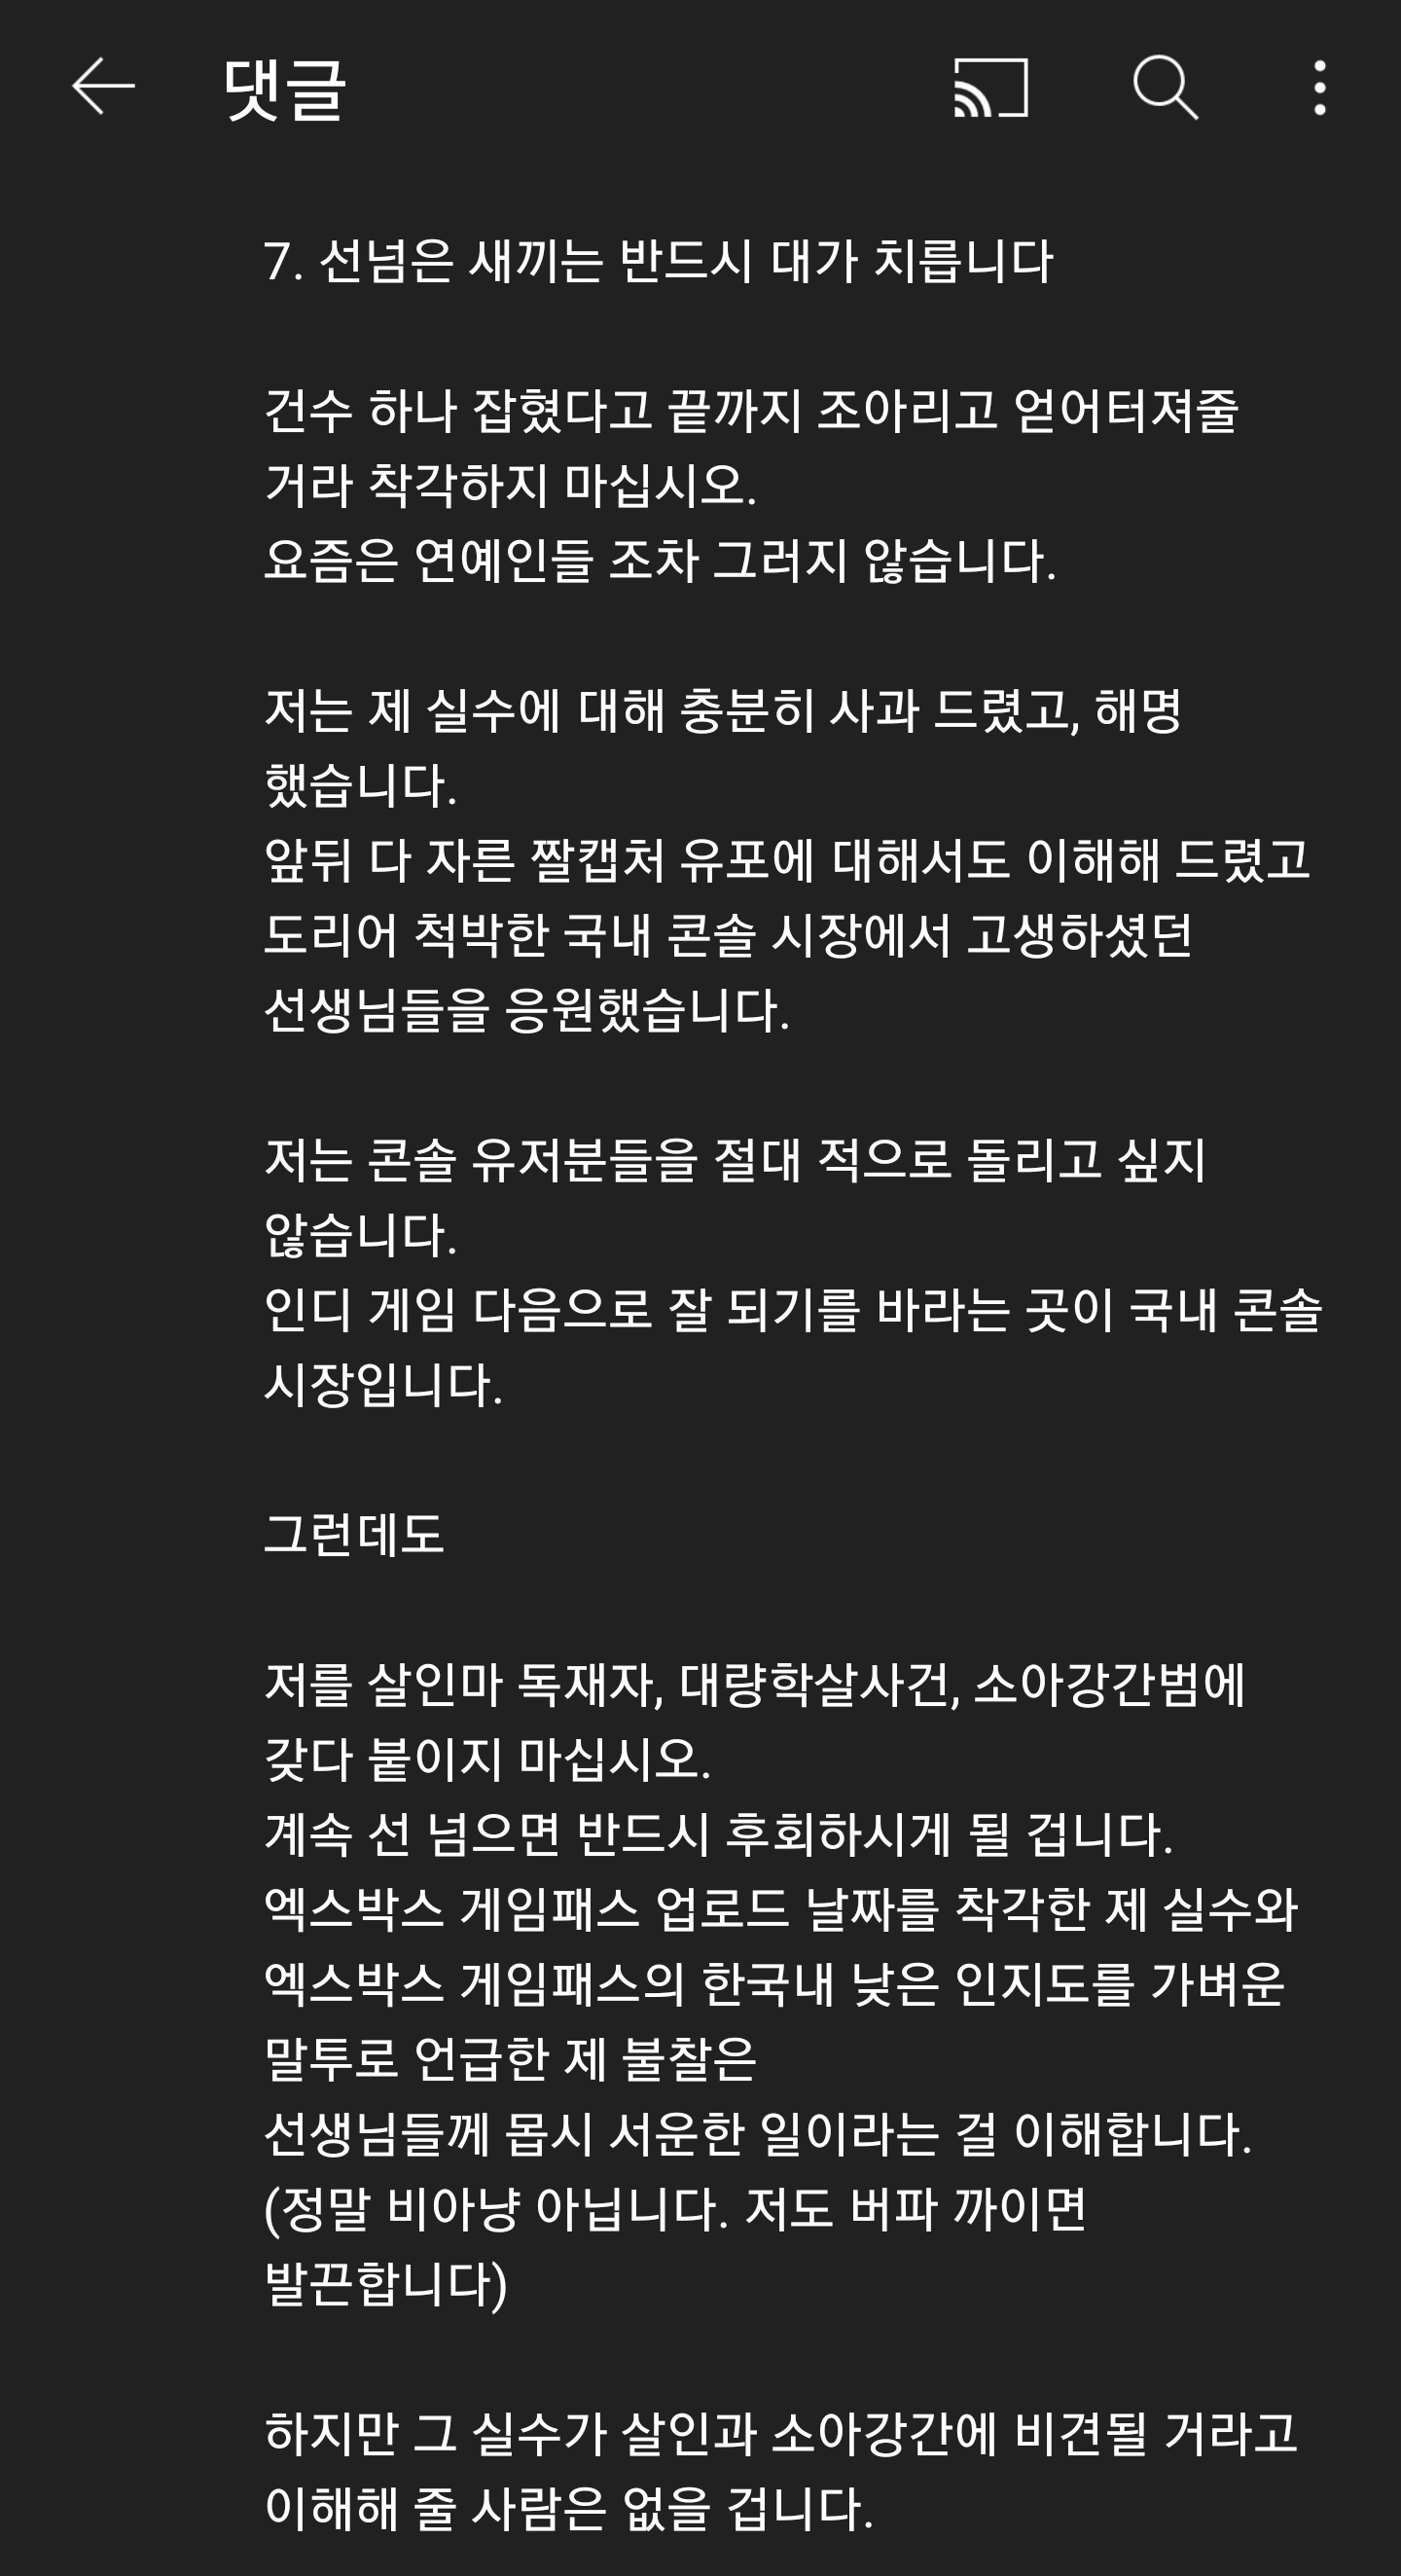 G식백과 패드립 악플러에 강경대응 예정